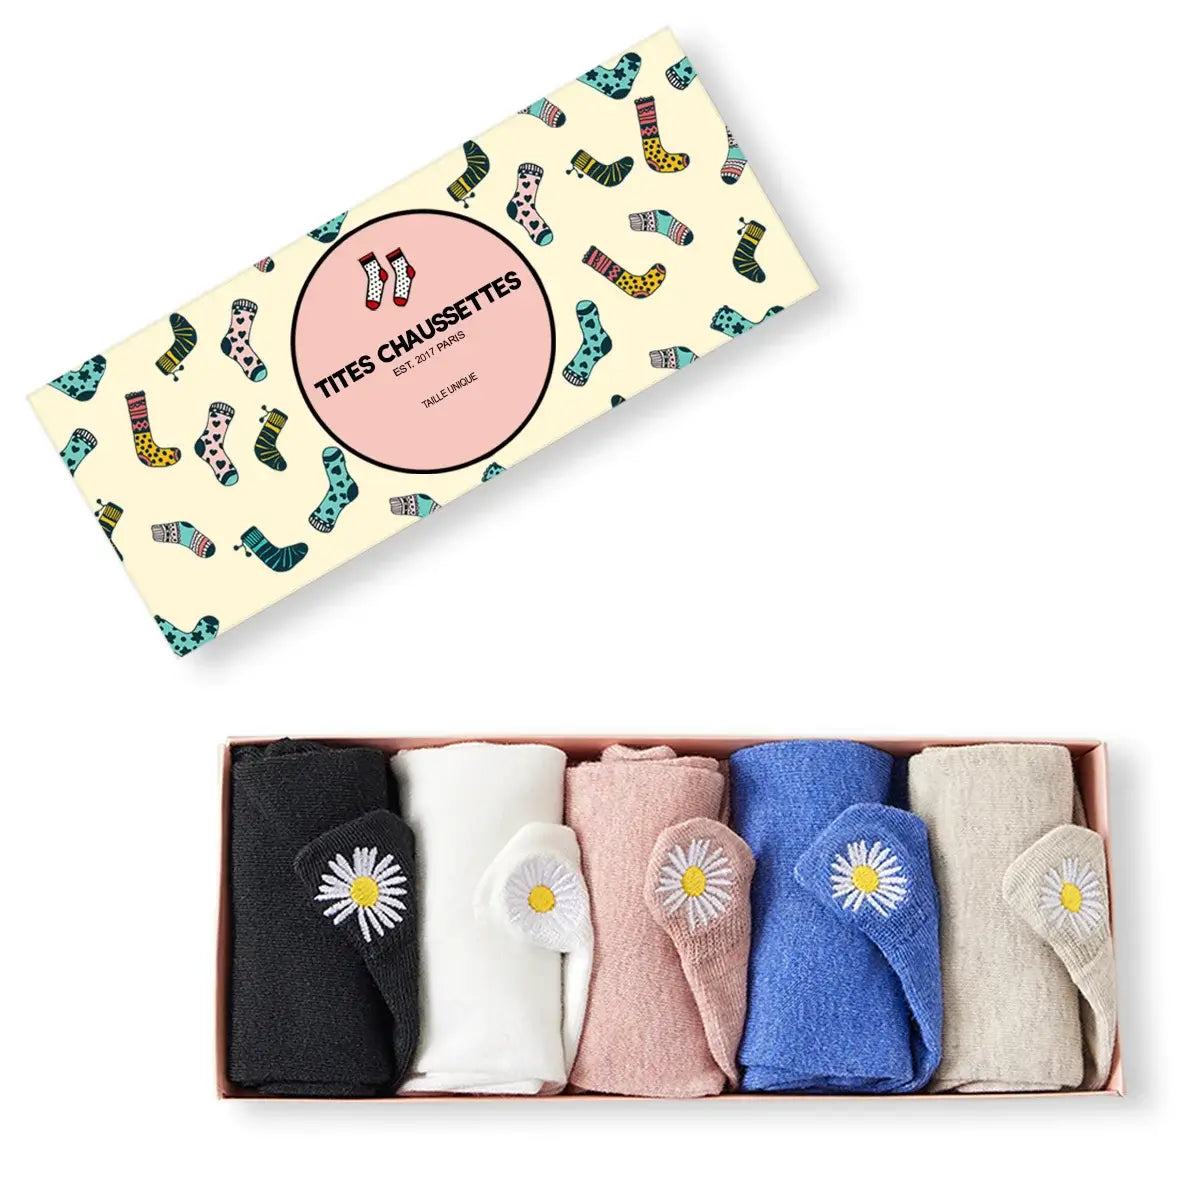 Chaussettes en coton à languette fleur pour femme | Chaussettes douces et respirantes | Fabriquées à partir de matériaux de haute qualité | Un cadeau parfait pour les femmes de tous âges